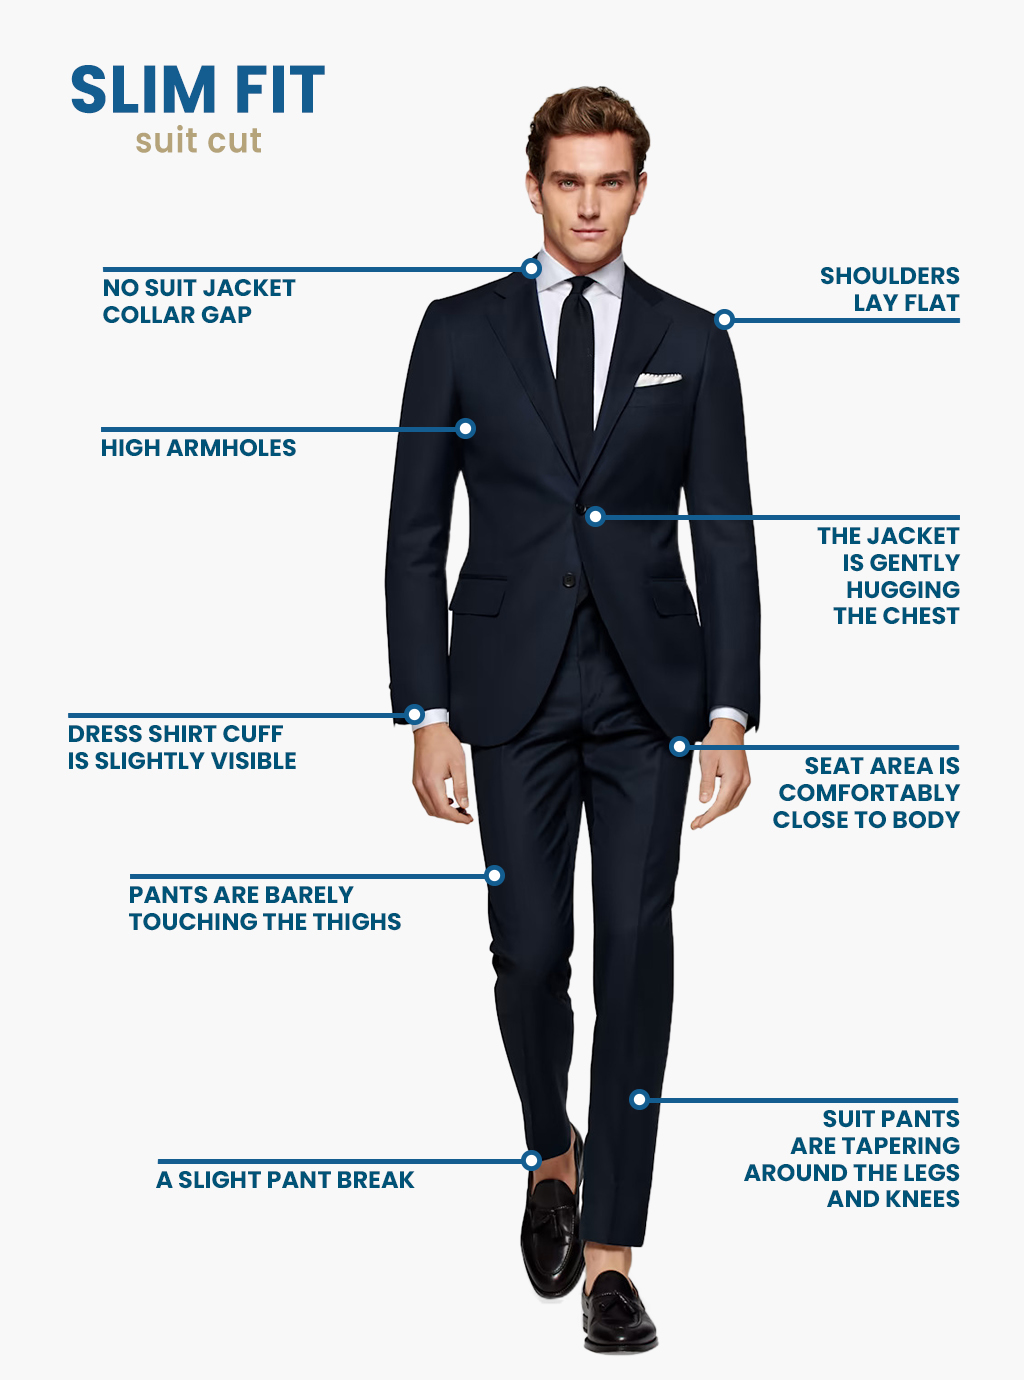 what is slim-fit suit cut